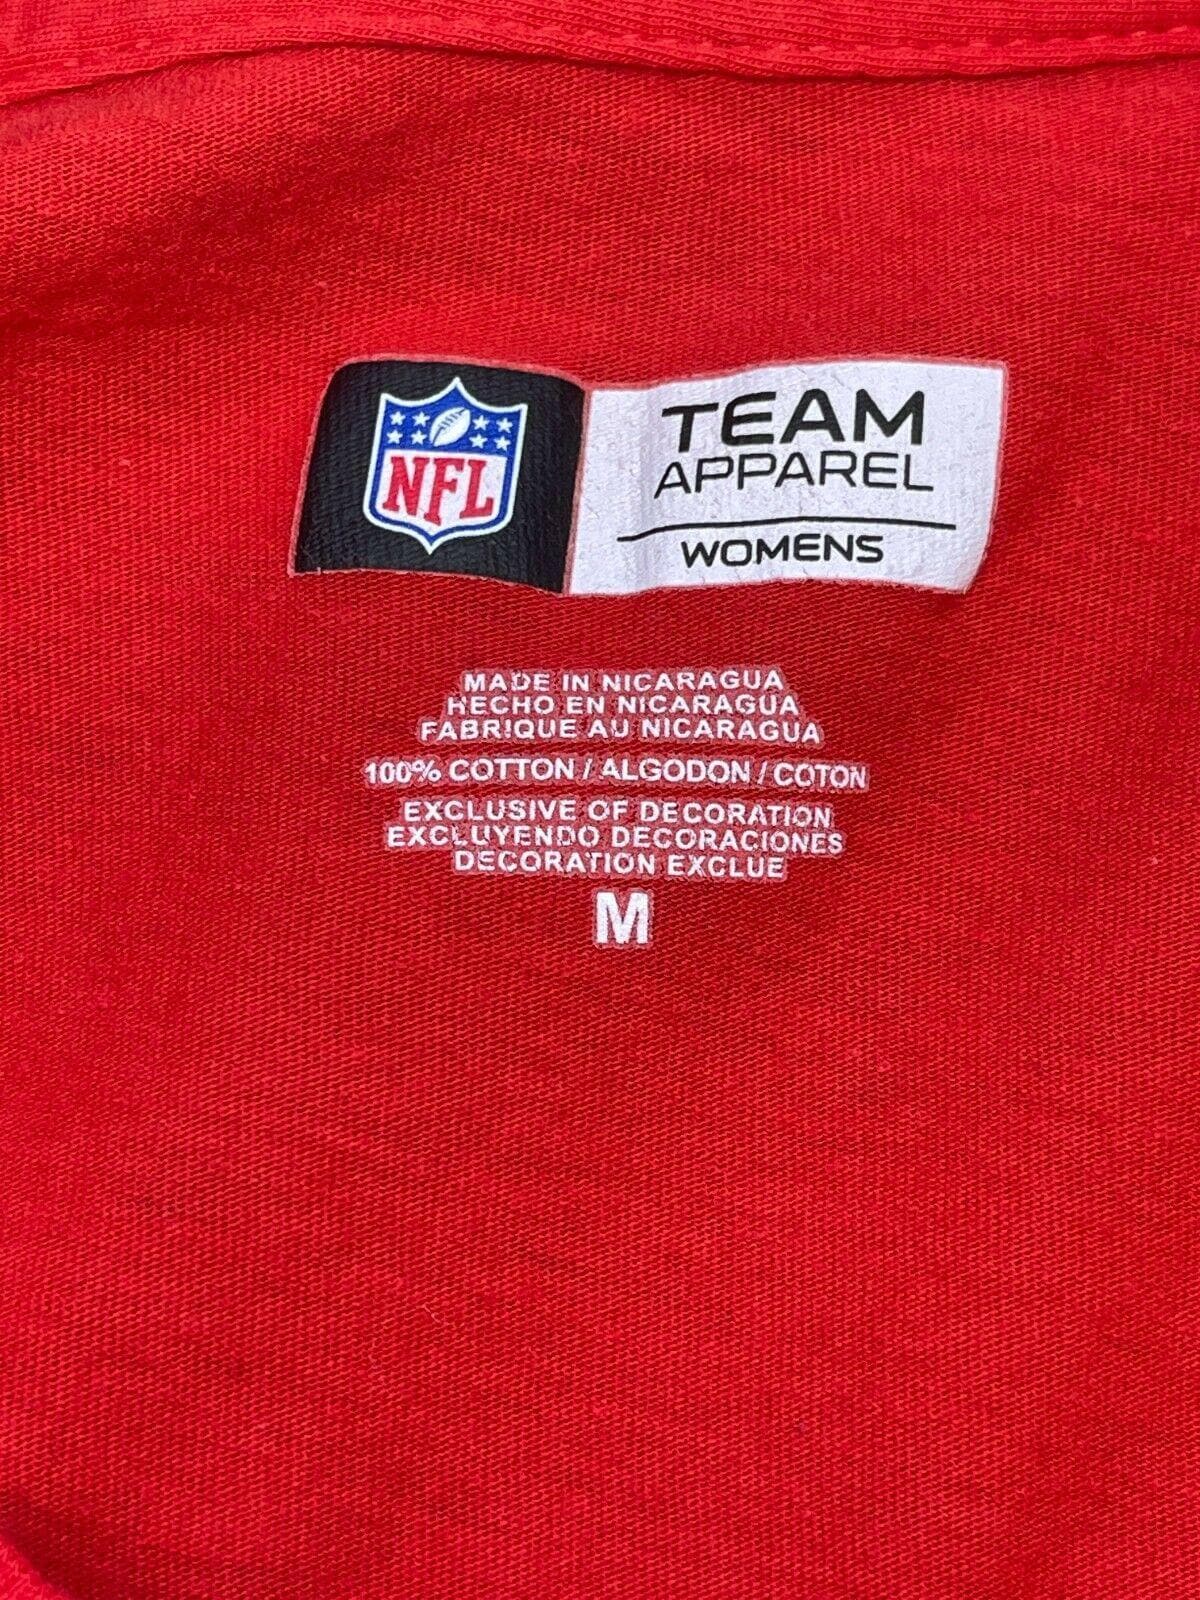 NFL Kansas City Chiefs Long-Sleeved T-Shirt Women's Medium